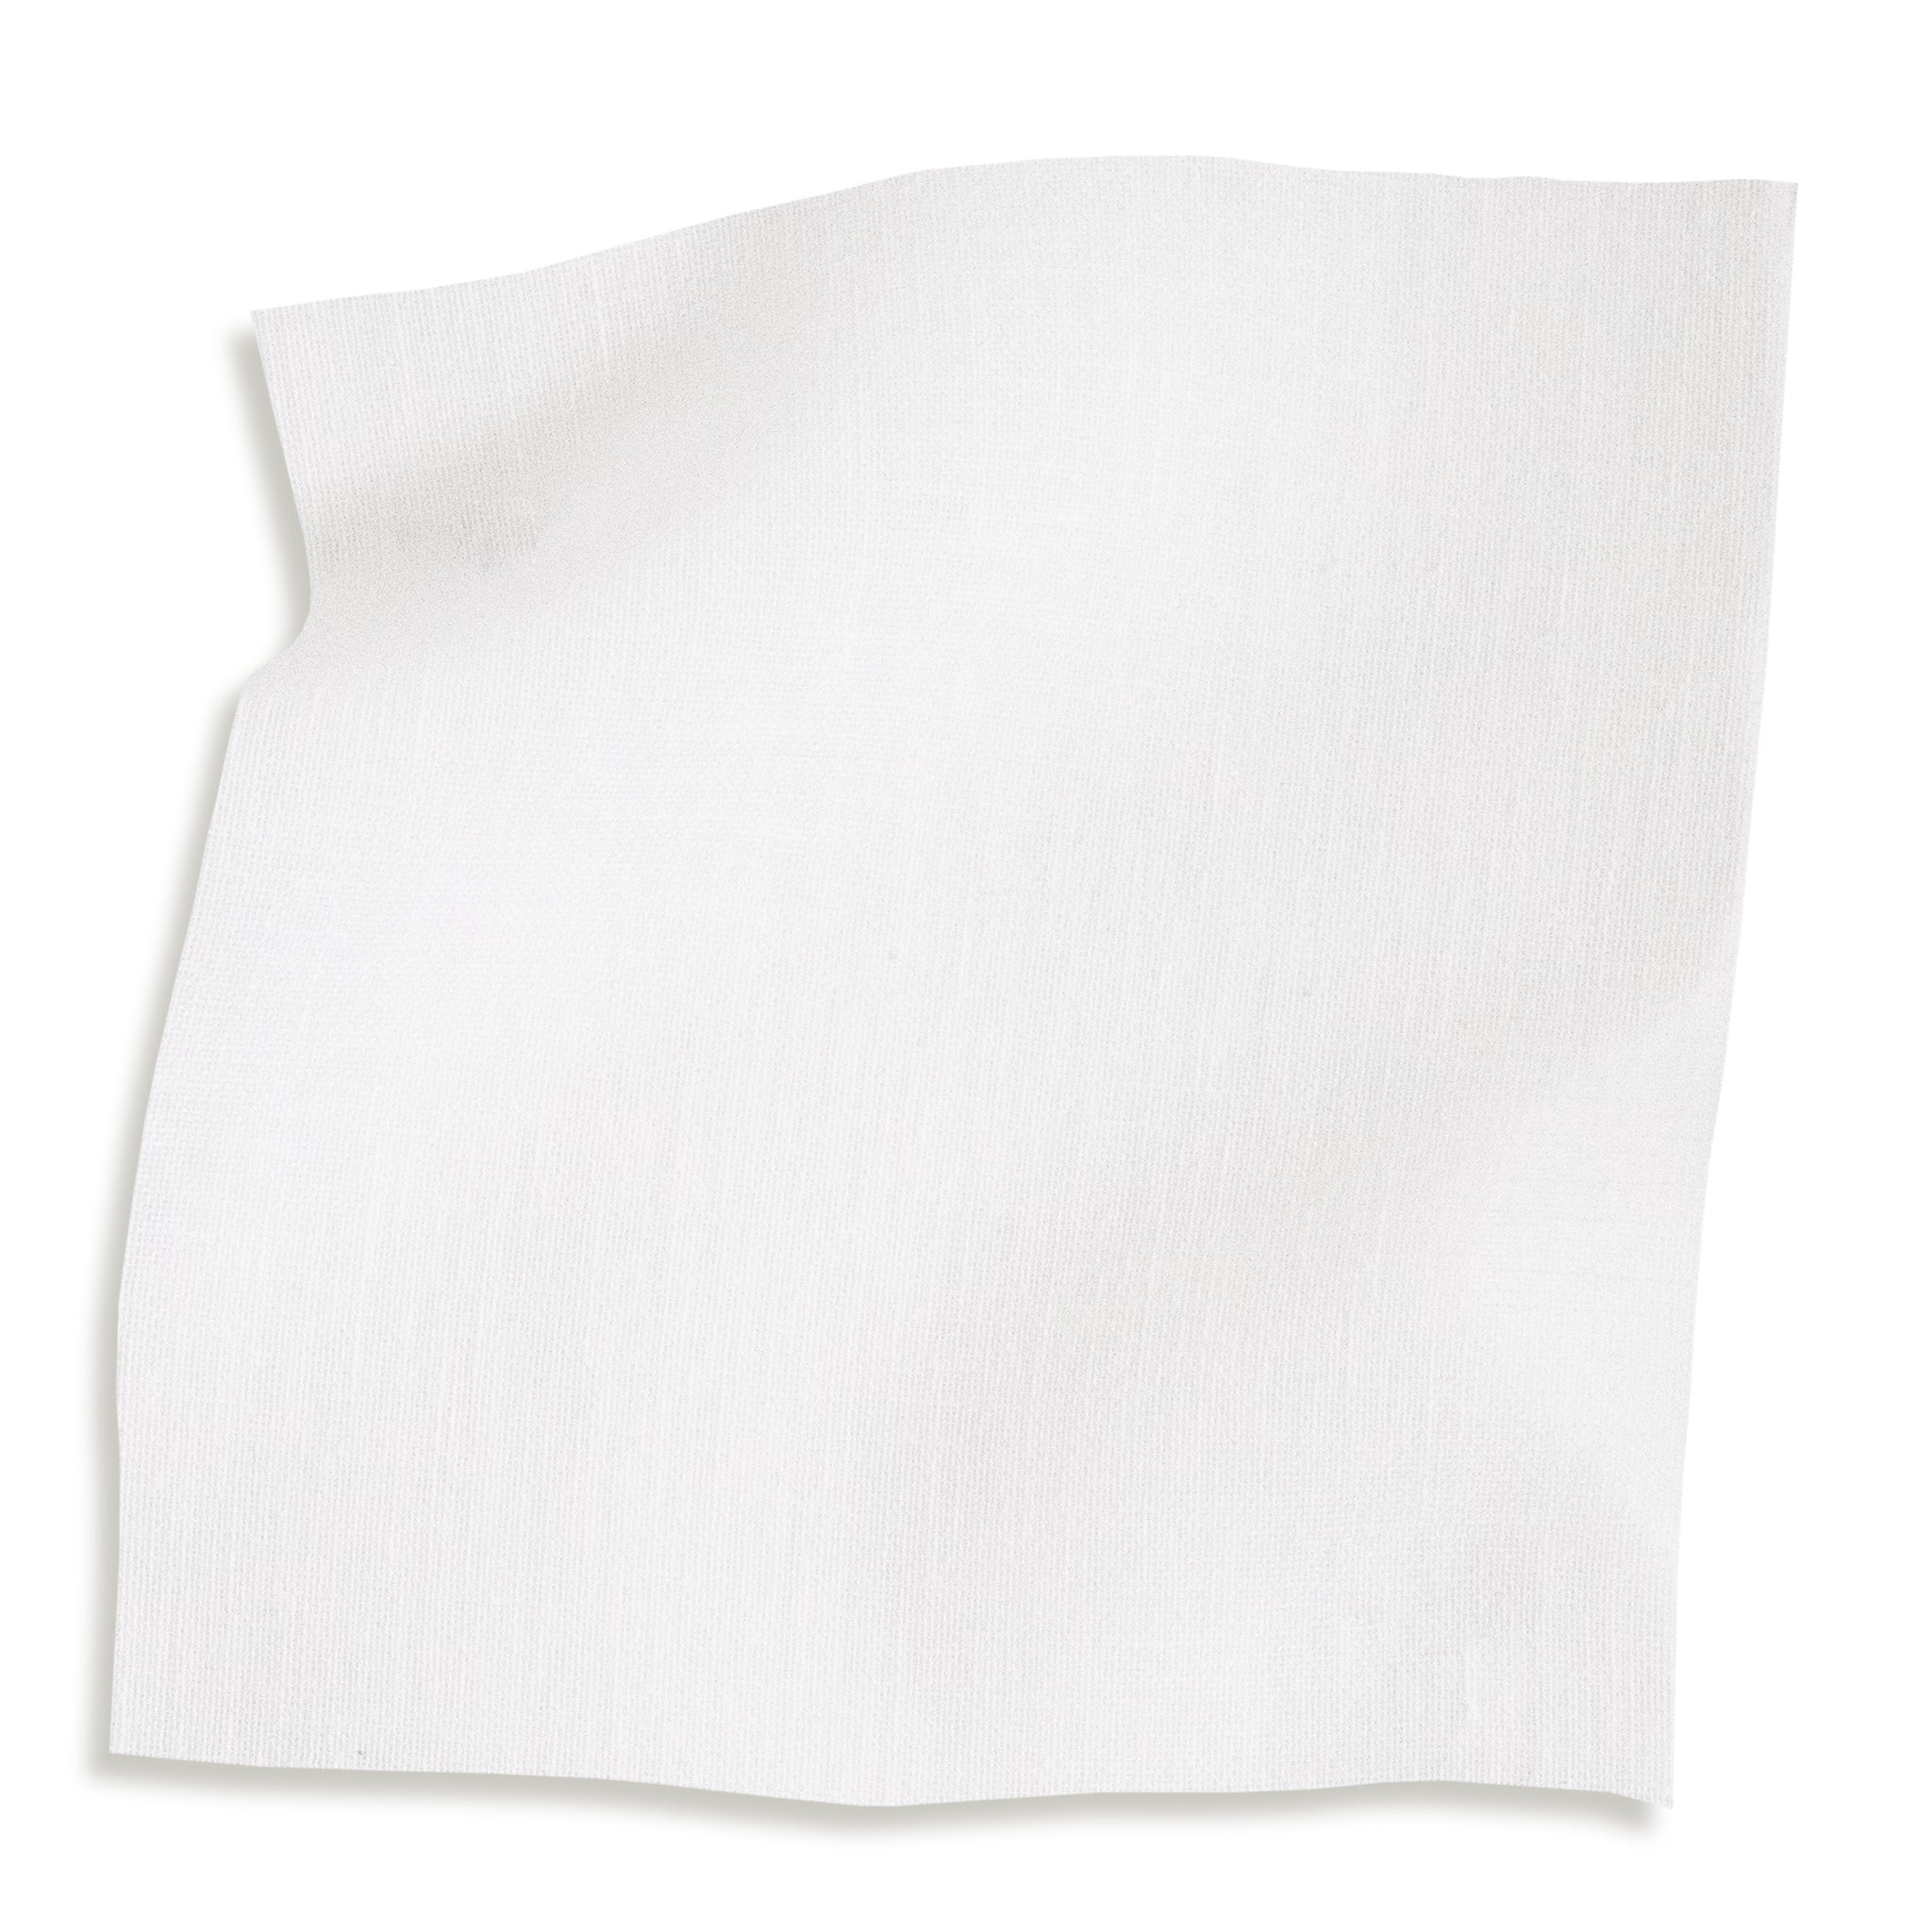 sheer white fabric swatch 